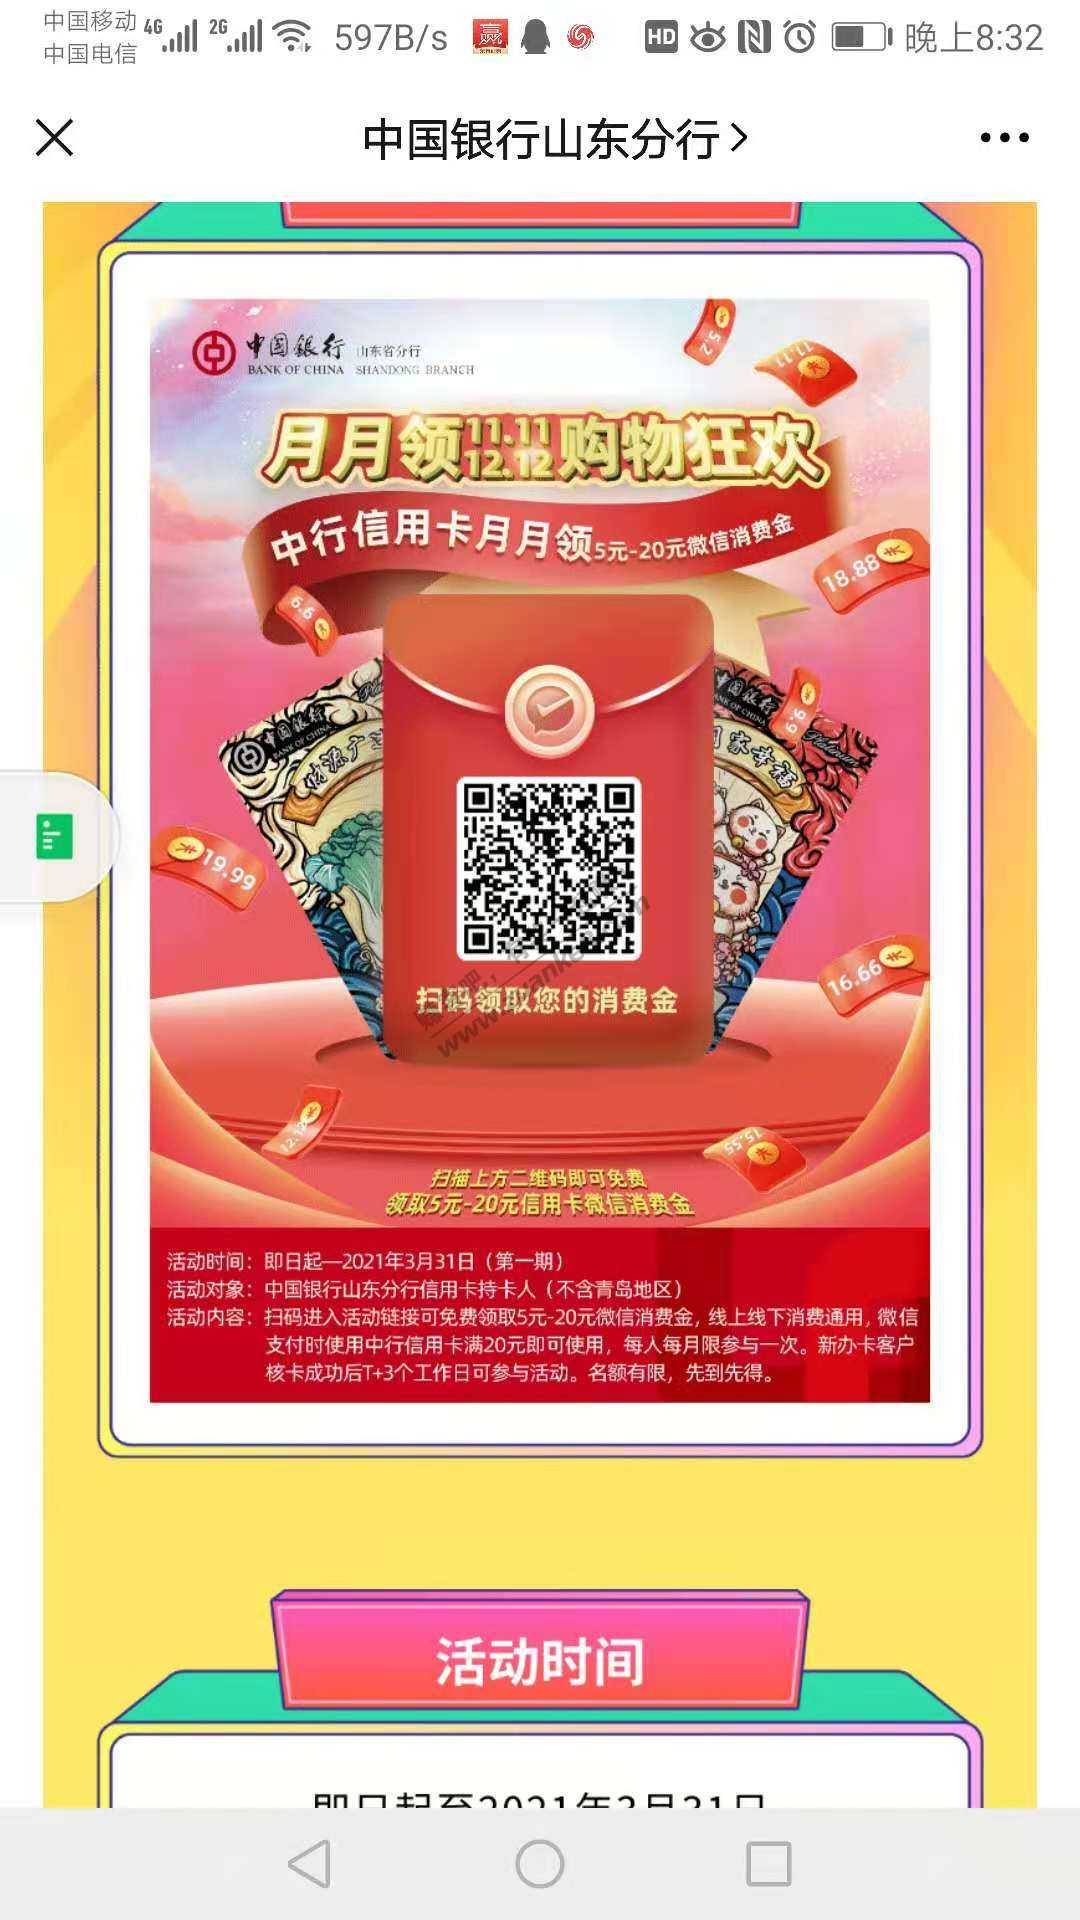 中国银行山东分行微信公众号领立减金5-20-惠小助(52huixz.com)